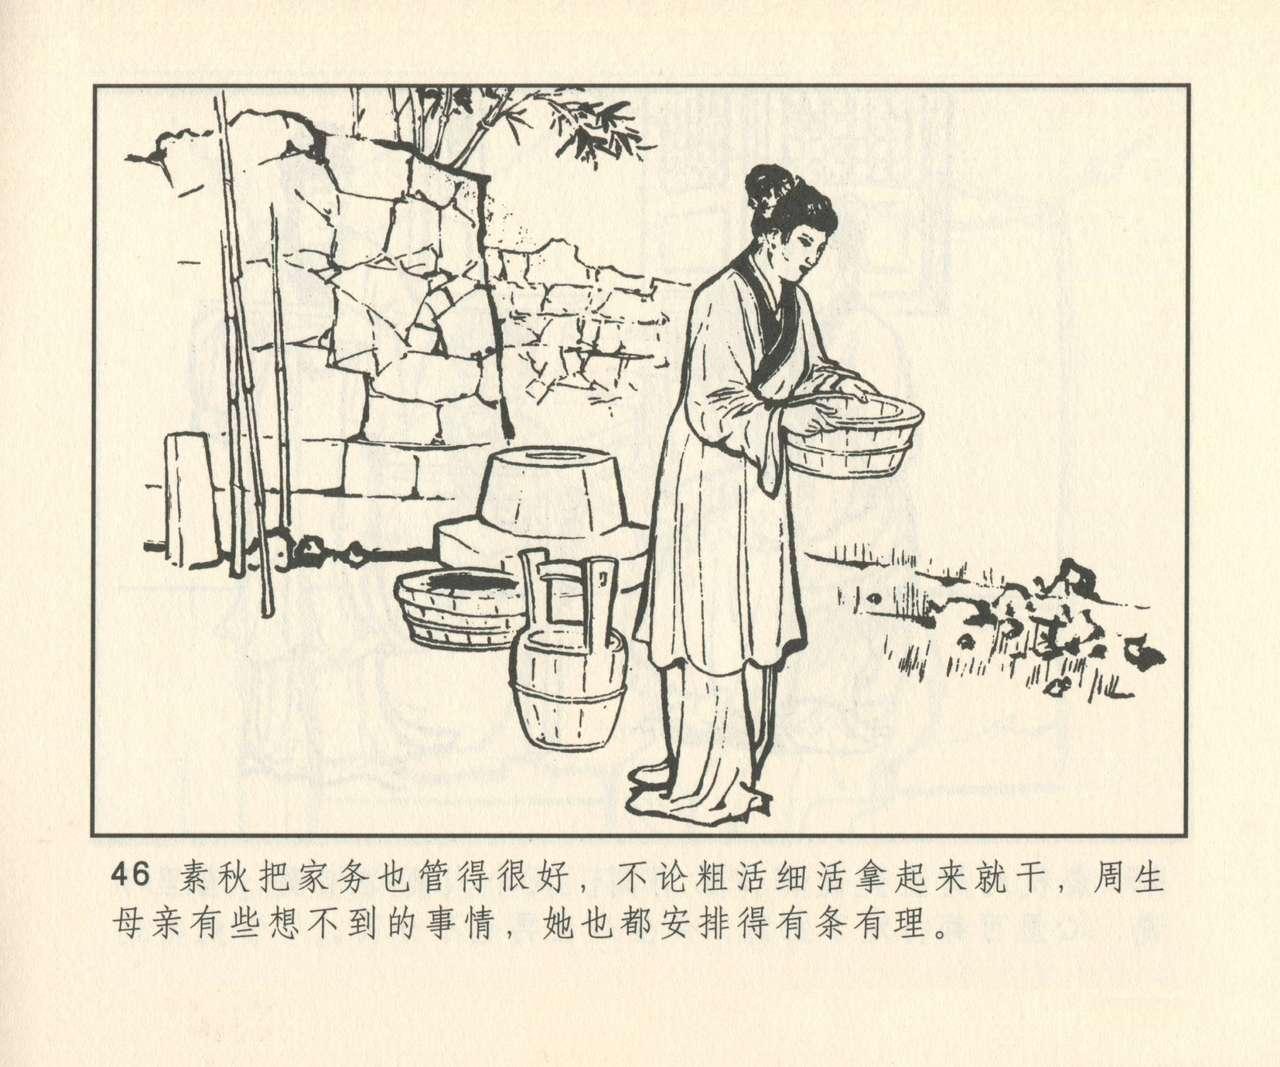 聊斋志异 张玮等绘 天津人民美术出版社 卷二十一 ~ 三十 326